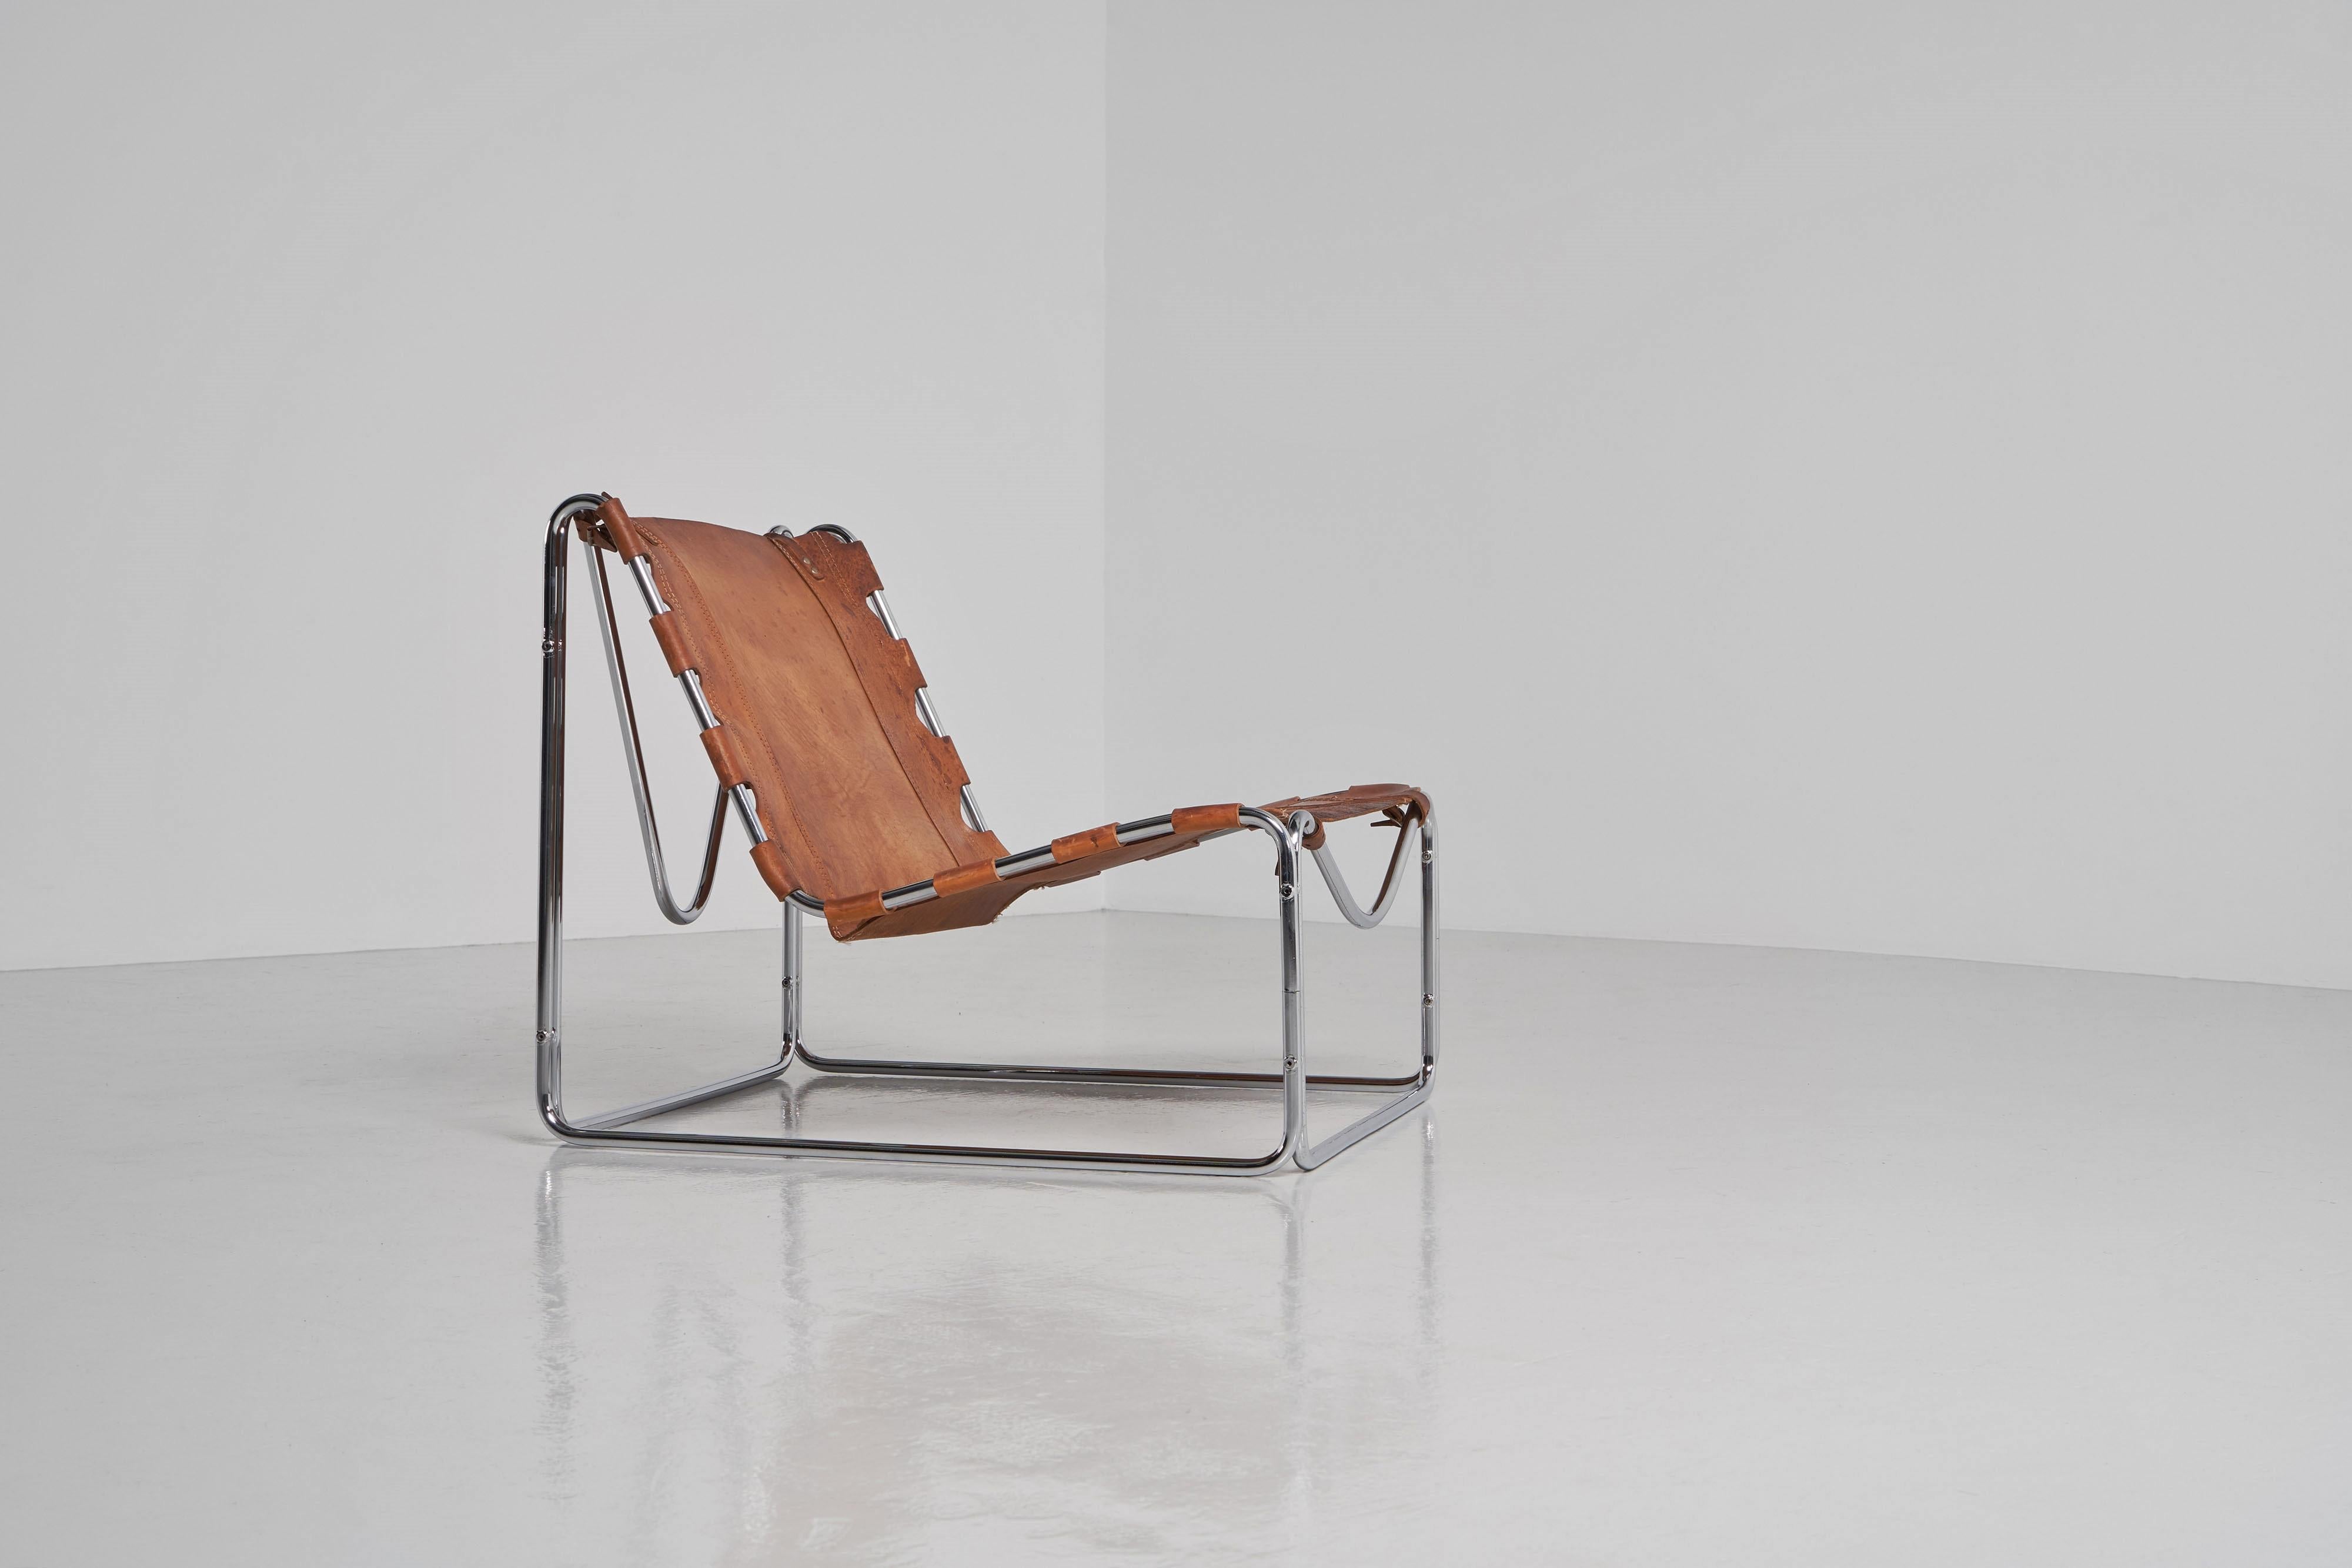 Magnifique chaise longue Fabio, conçue par Pascal Mourgue et fabriquée par Steiner en France en 1970. Cette chaise remarquable présente une forme captivante et est fabriquée en métal tubulaire chromé, ce qui lui confère une esthétique élégante et